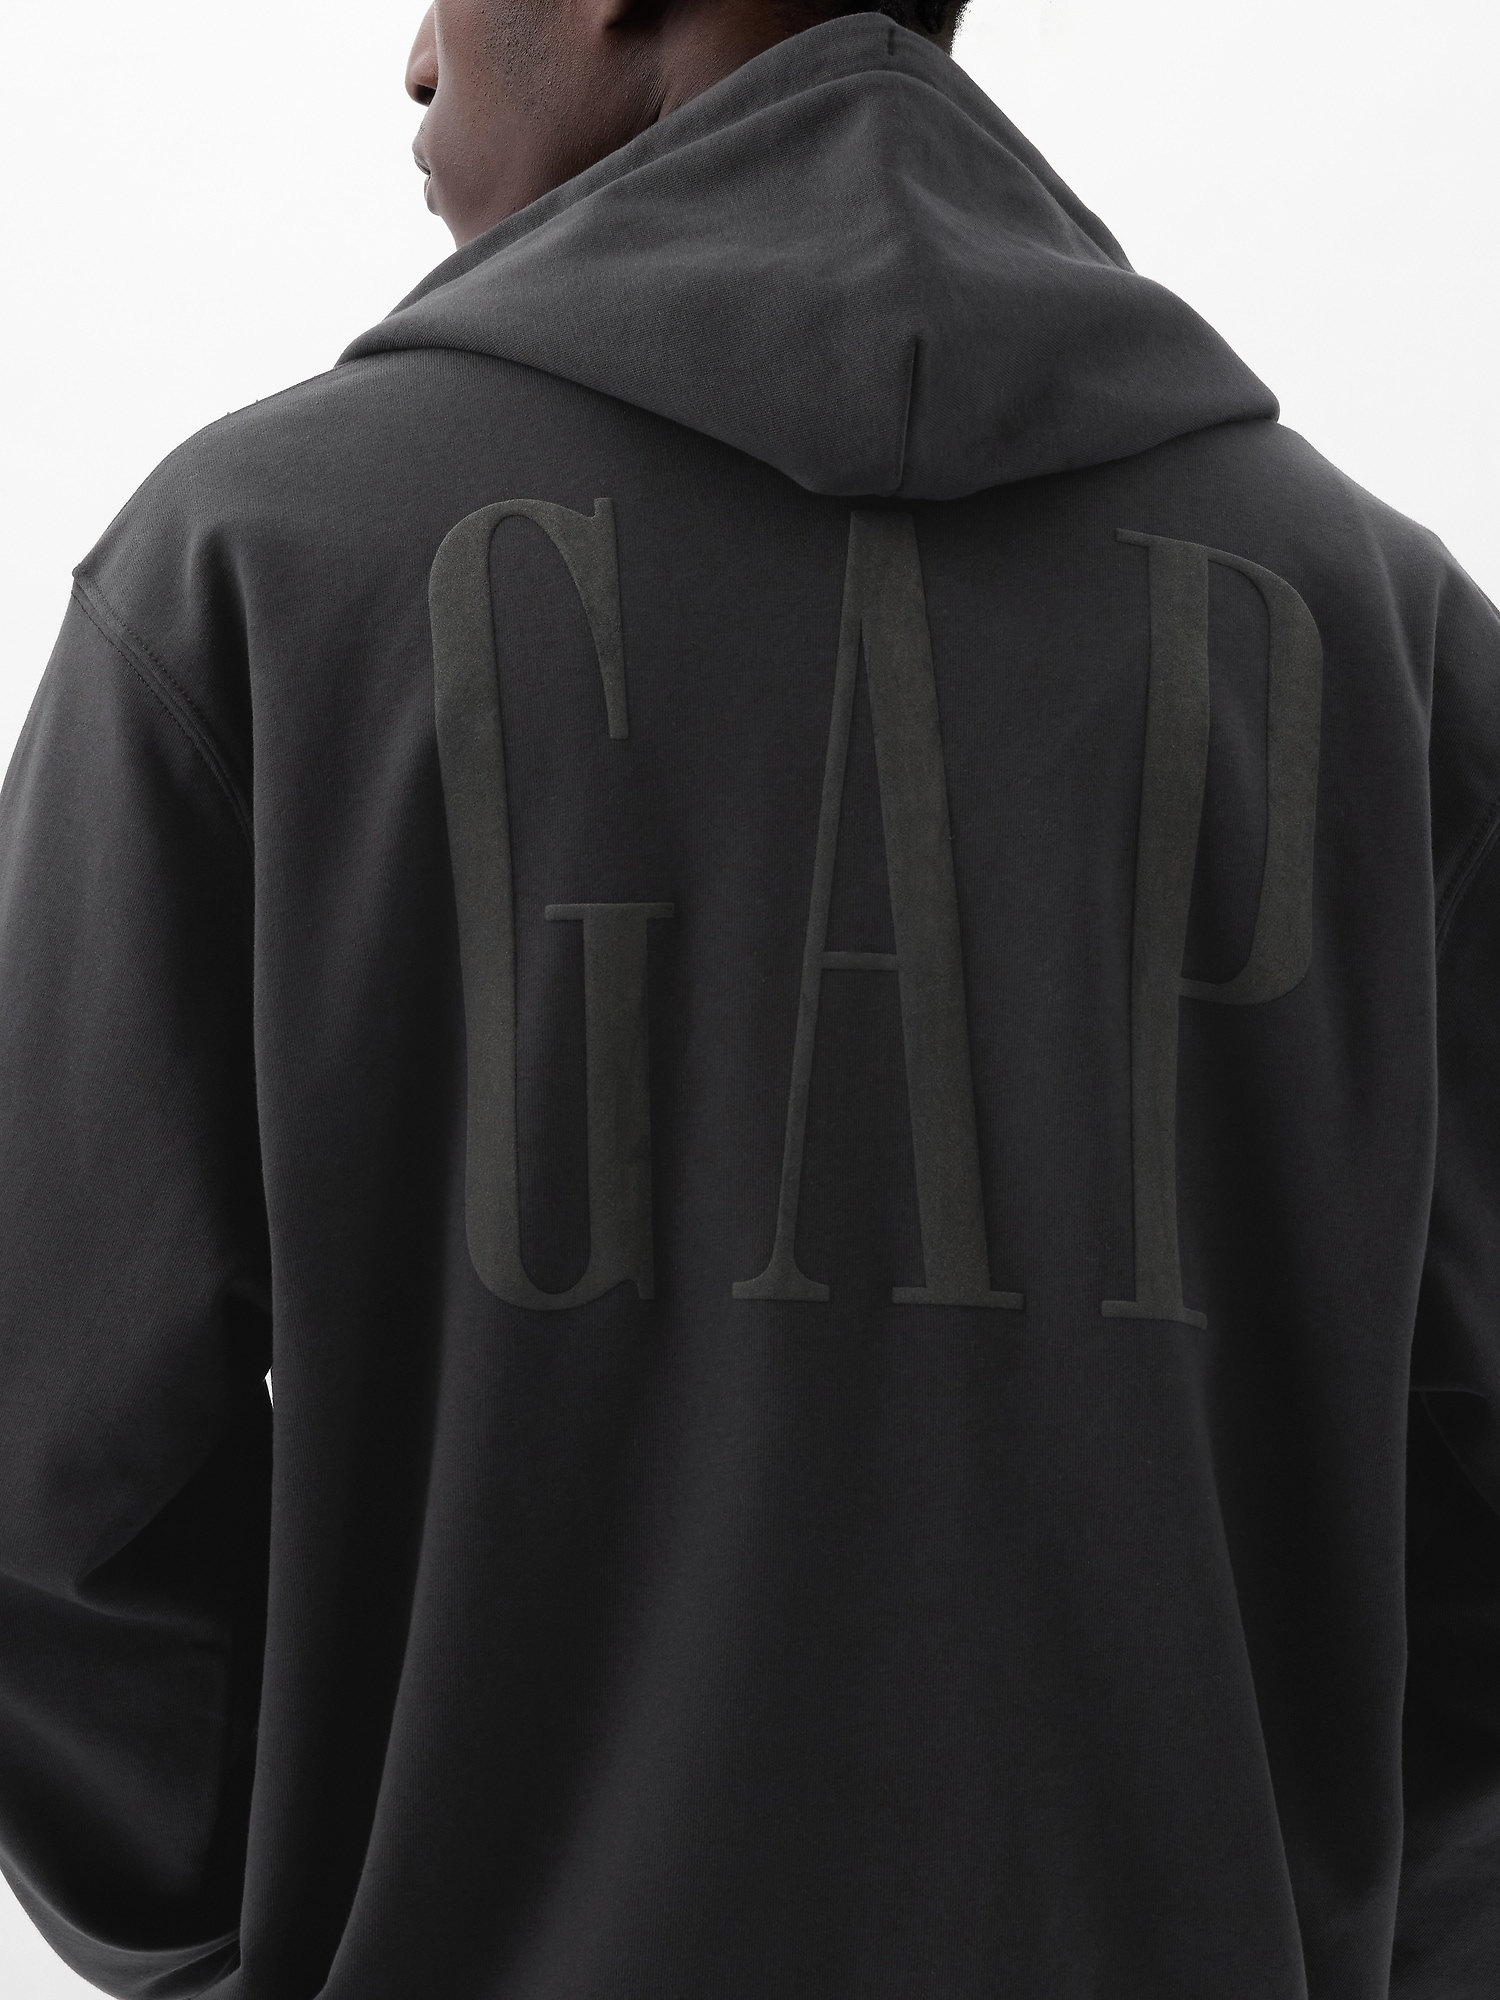 Gap公式オンラインストア | GAPロゴ ジップアップパーカー(ユニセックス)